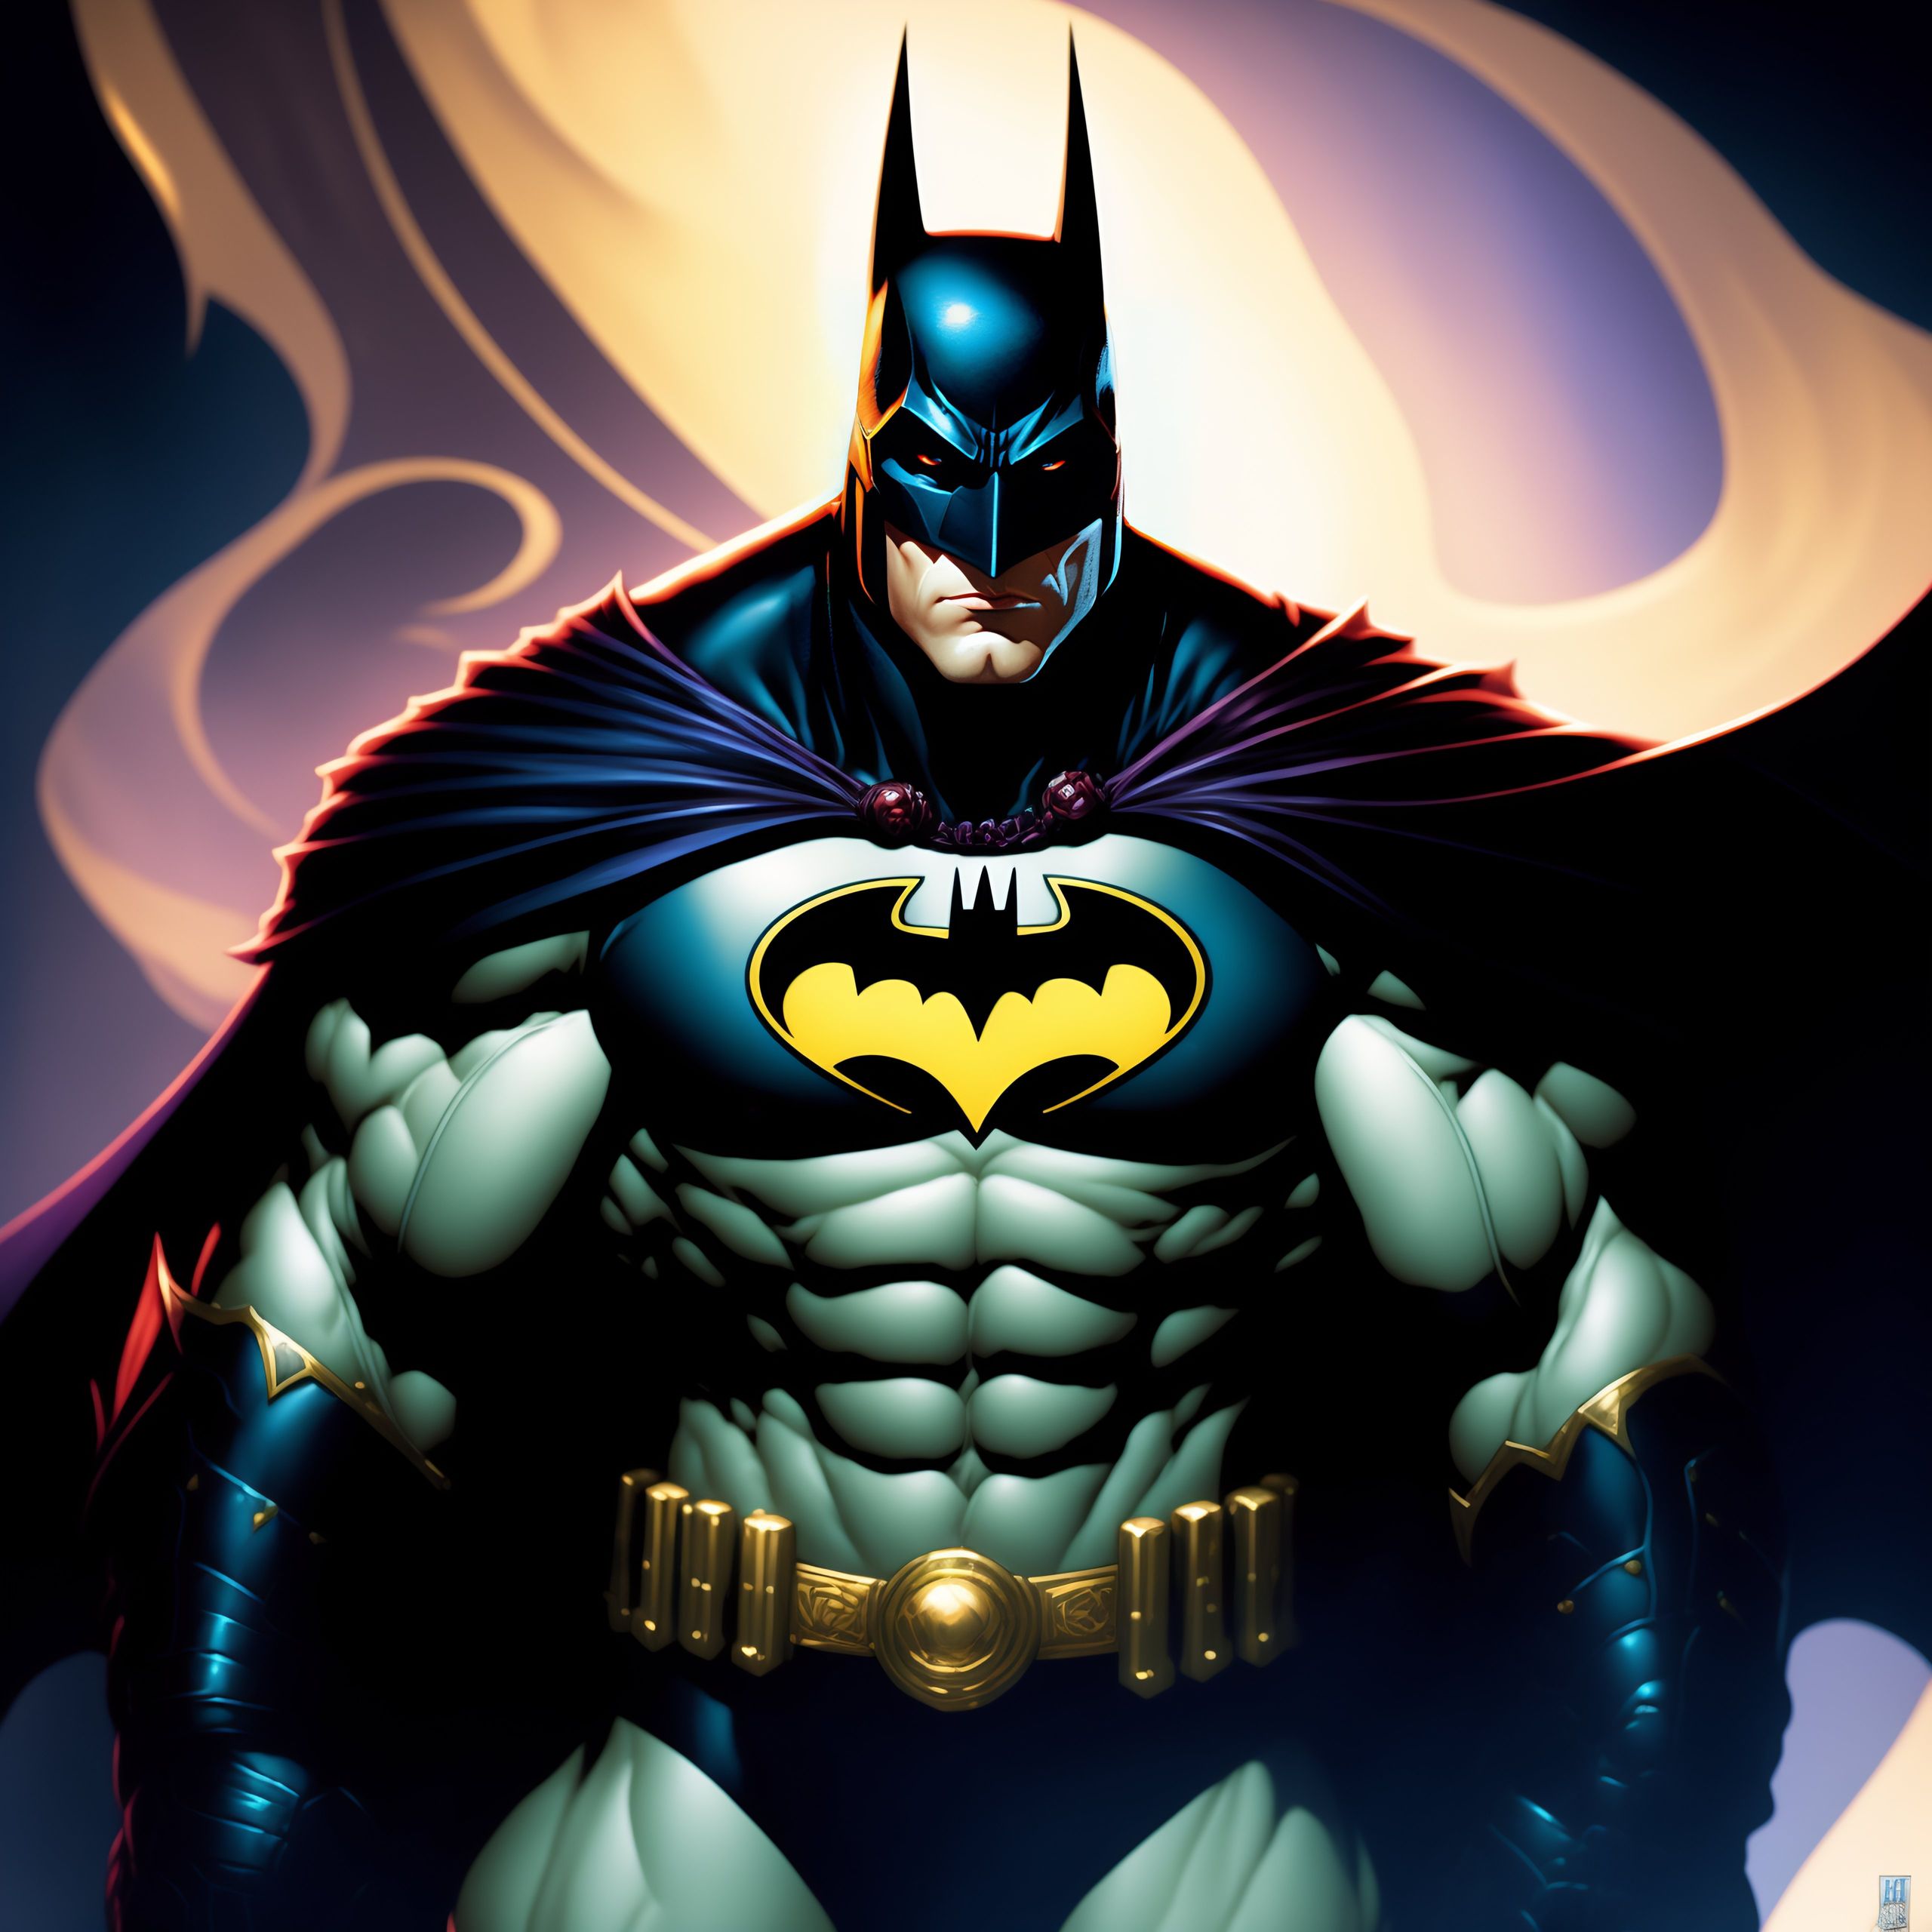 Lexica - Batman comics style illustration by Joe Madureiras